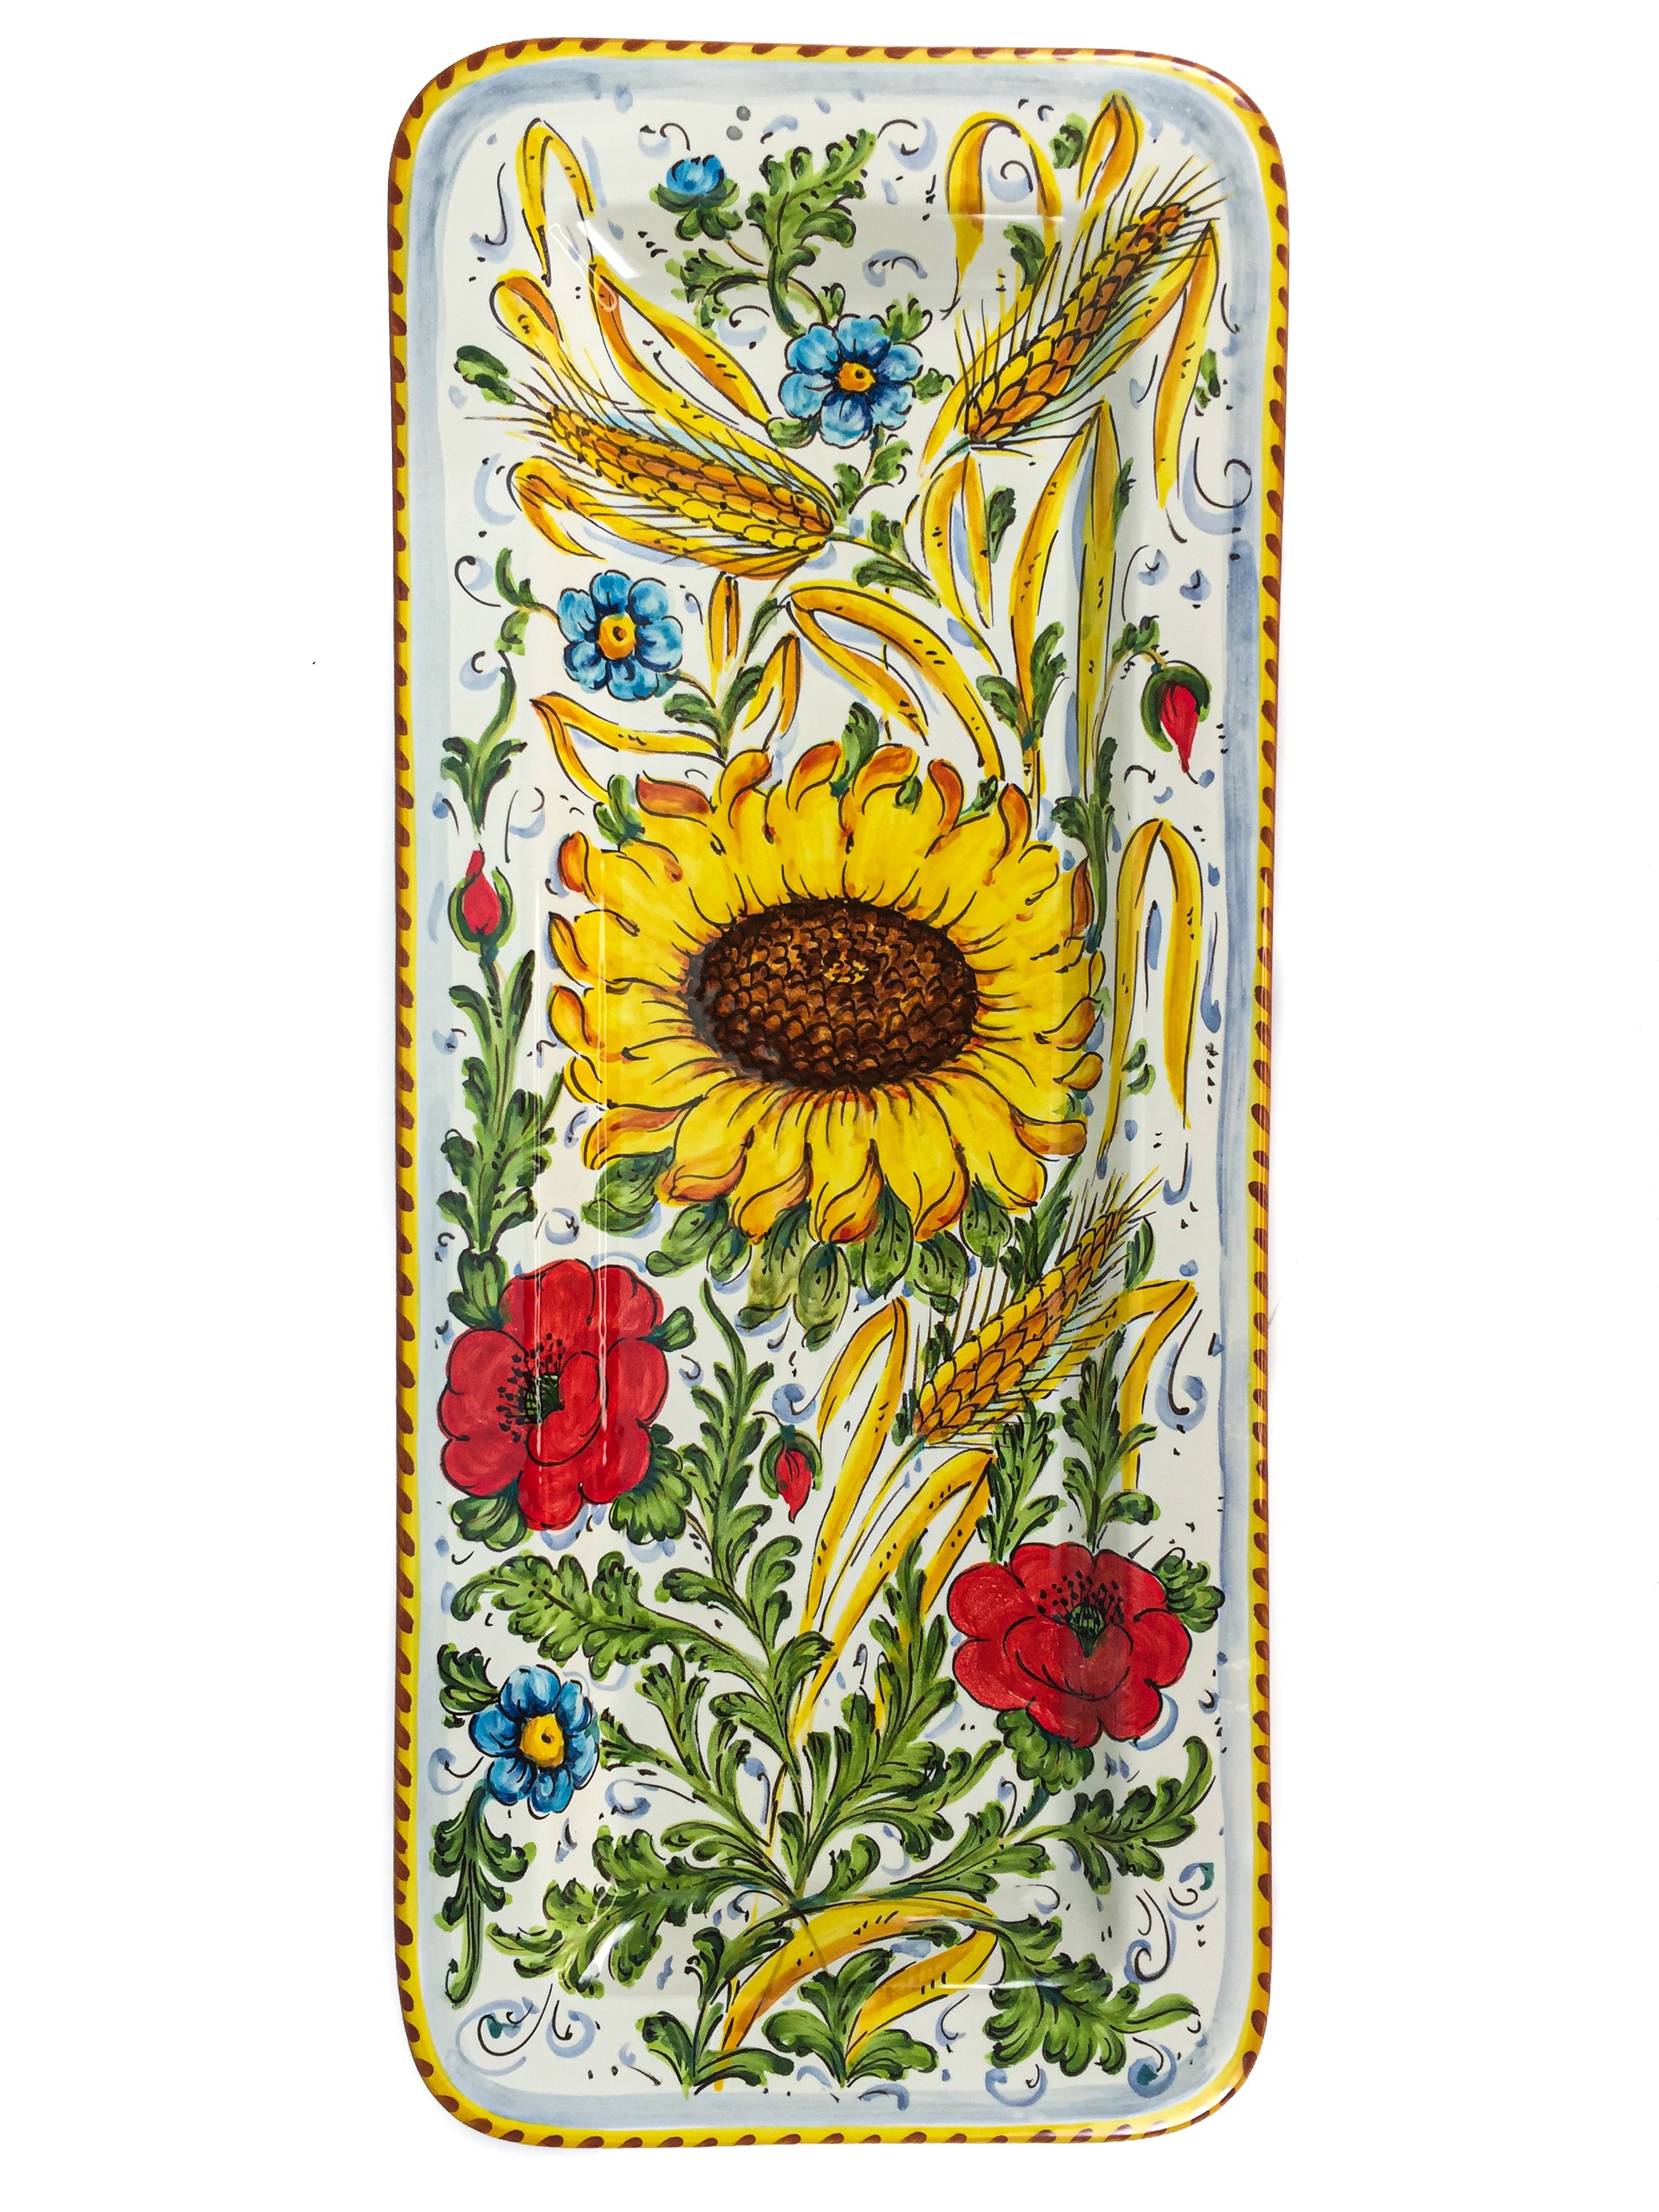 Borgioli - Sunflower on White Rectangular Platter 25cm x 55cm (9.8" x 21.6")